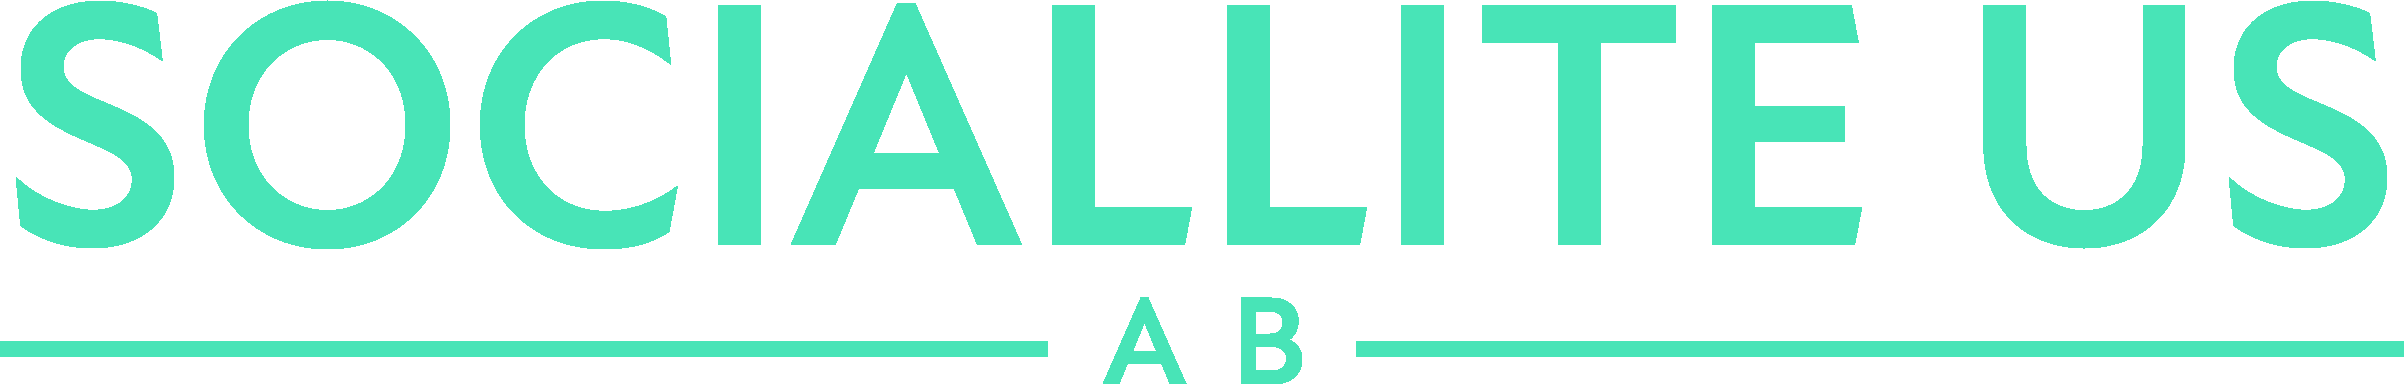 Sociallite US AB (publ) Logotyp